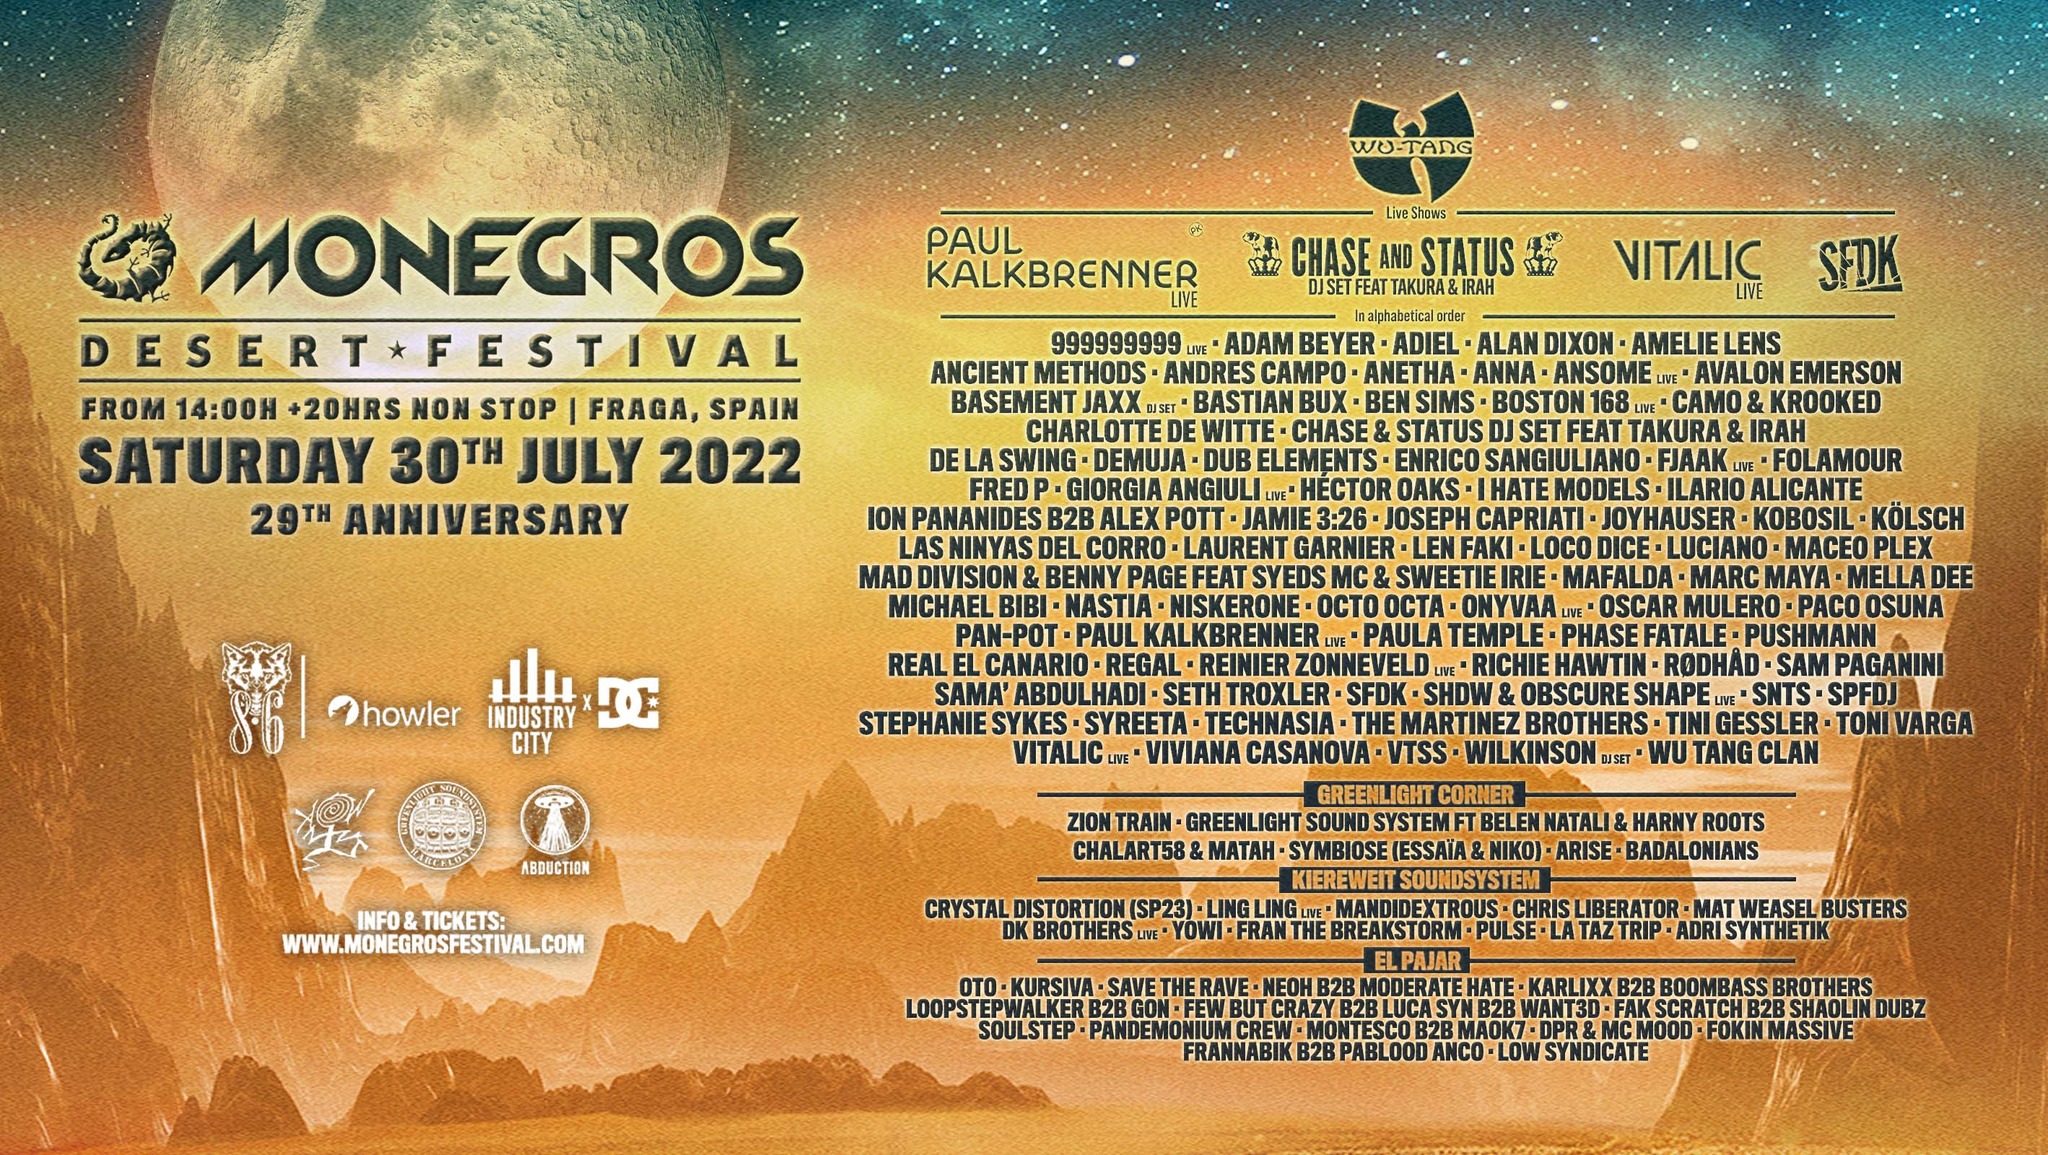 Monegros Desert Festival 2022